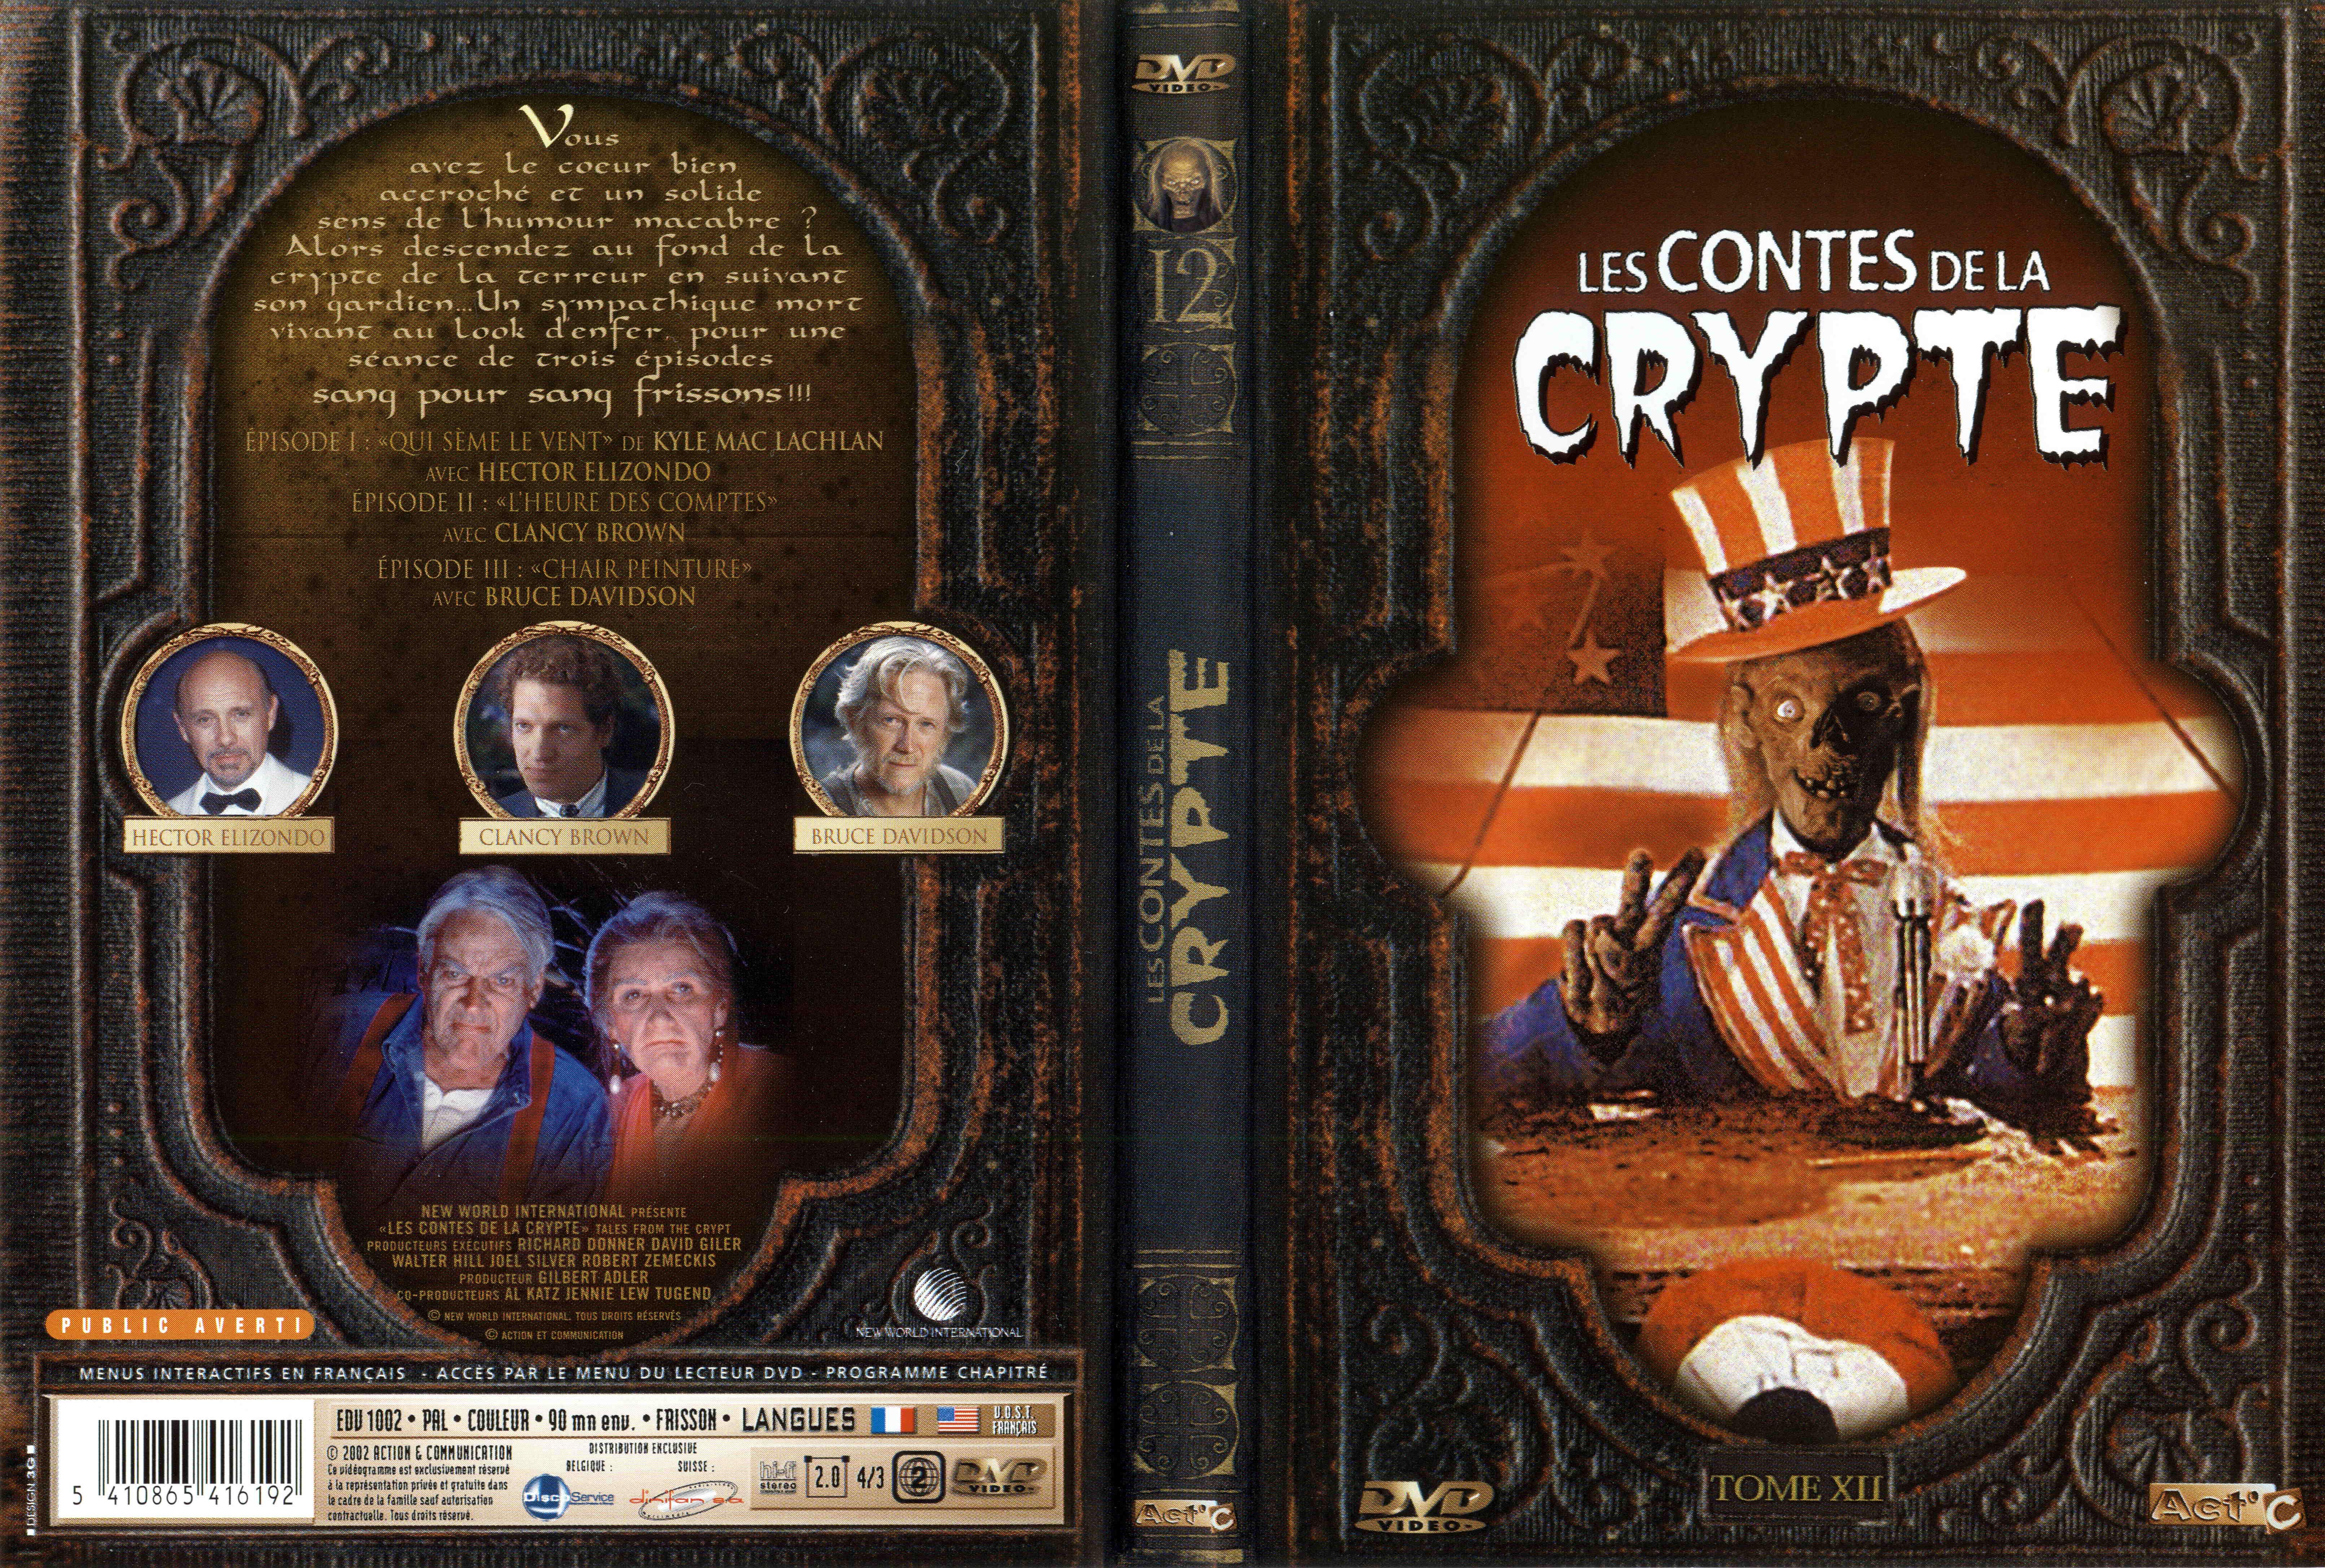 Jaquette DVD Les contes de la crypte vol 12 v2